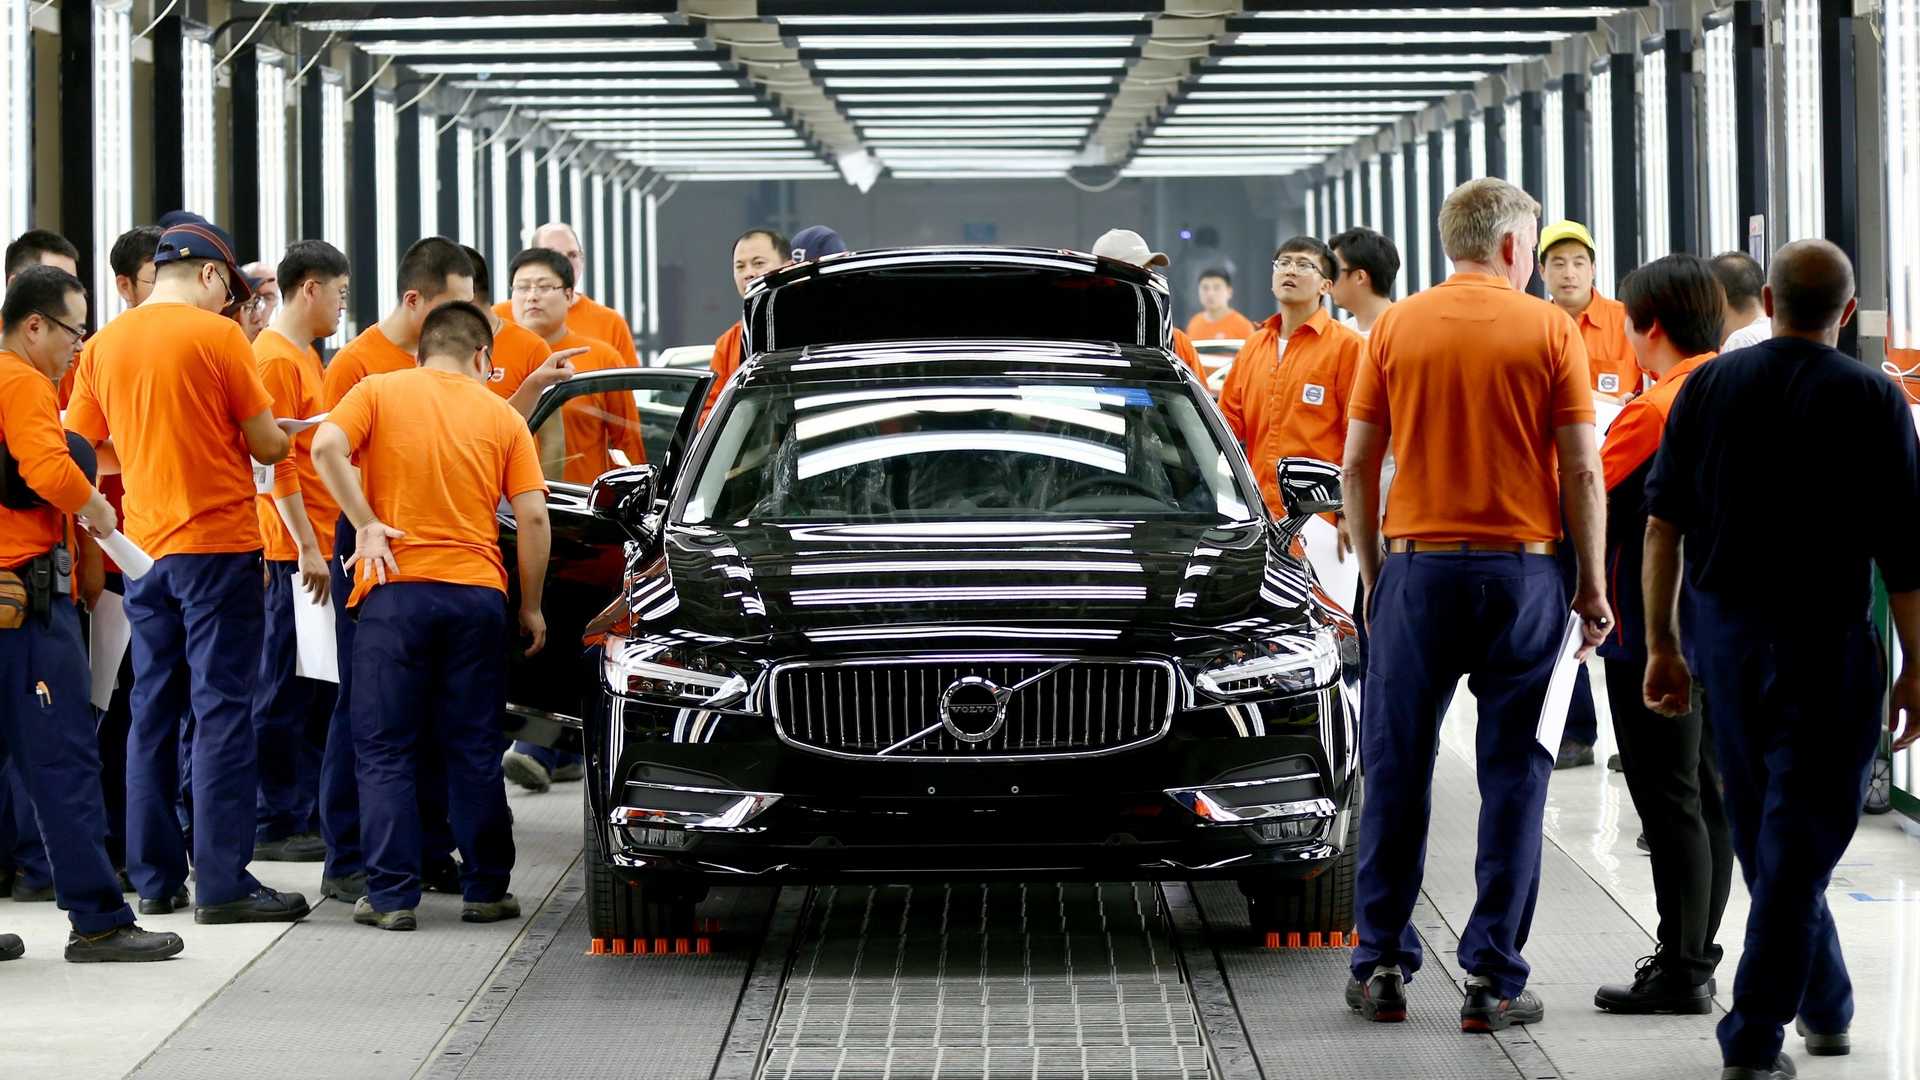 فولفو: جودة صناعة السيارات في الصين أفضل من أوروبا لهذا السبب 8